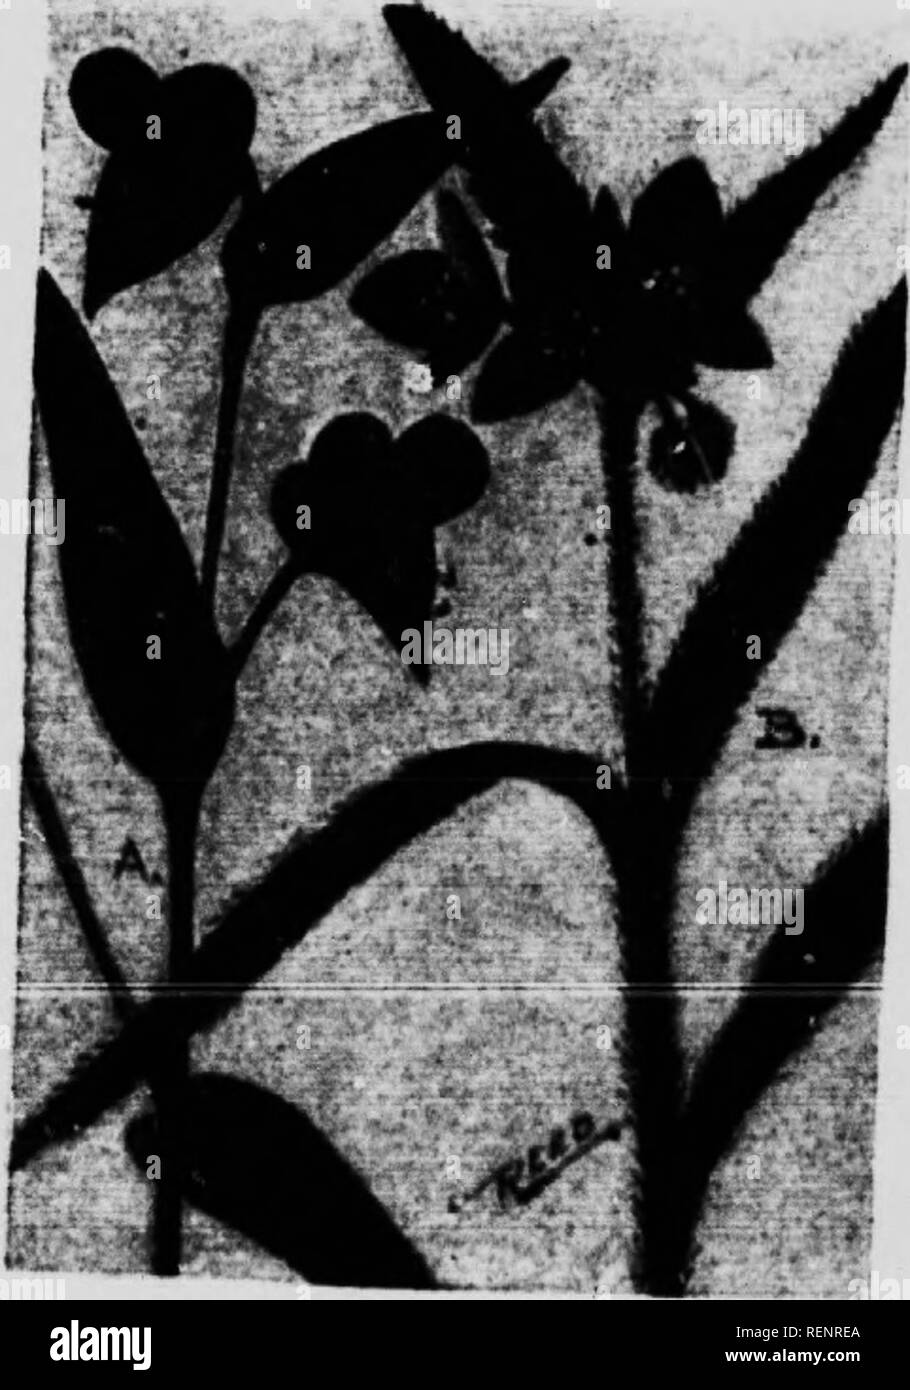 . Guida di fiore [microformati] : fiori selvatici ad est delle Montagne Rocciose. Fiori; Fleurs; Botanique; Botanica. Famiglia SPIDERWORT (Coniniflinacea) (A) DAT-Fr.owEB (Comwelina communis) è uno dei pochissimi della nostra nativa j.lant. Imvinfj puro falciatrici blu iach blossom dura ma un unico sistema dav n.Â"eis. Lo stelo è piuttosto debole, molto articolata e raggiungono altezze di uno a due piedi. Due petalo, sono lar^ ami arrotondati di colore blu, mentre il terzo è t v e s: meno; il tutto tuttavia fa capolino da una clas,"nfr? C r crn messa. Per Mieh. e a sud, blixmiin." in ricchi boschi o doorjards da giugno a settembre ^u:^n:L^.;Â£'- &qu Foto Stock